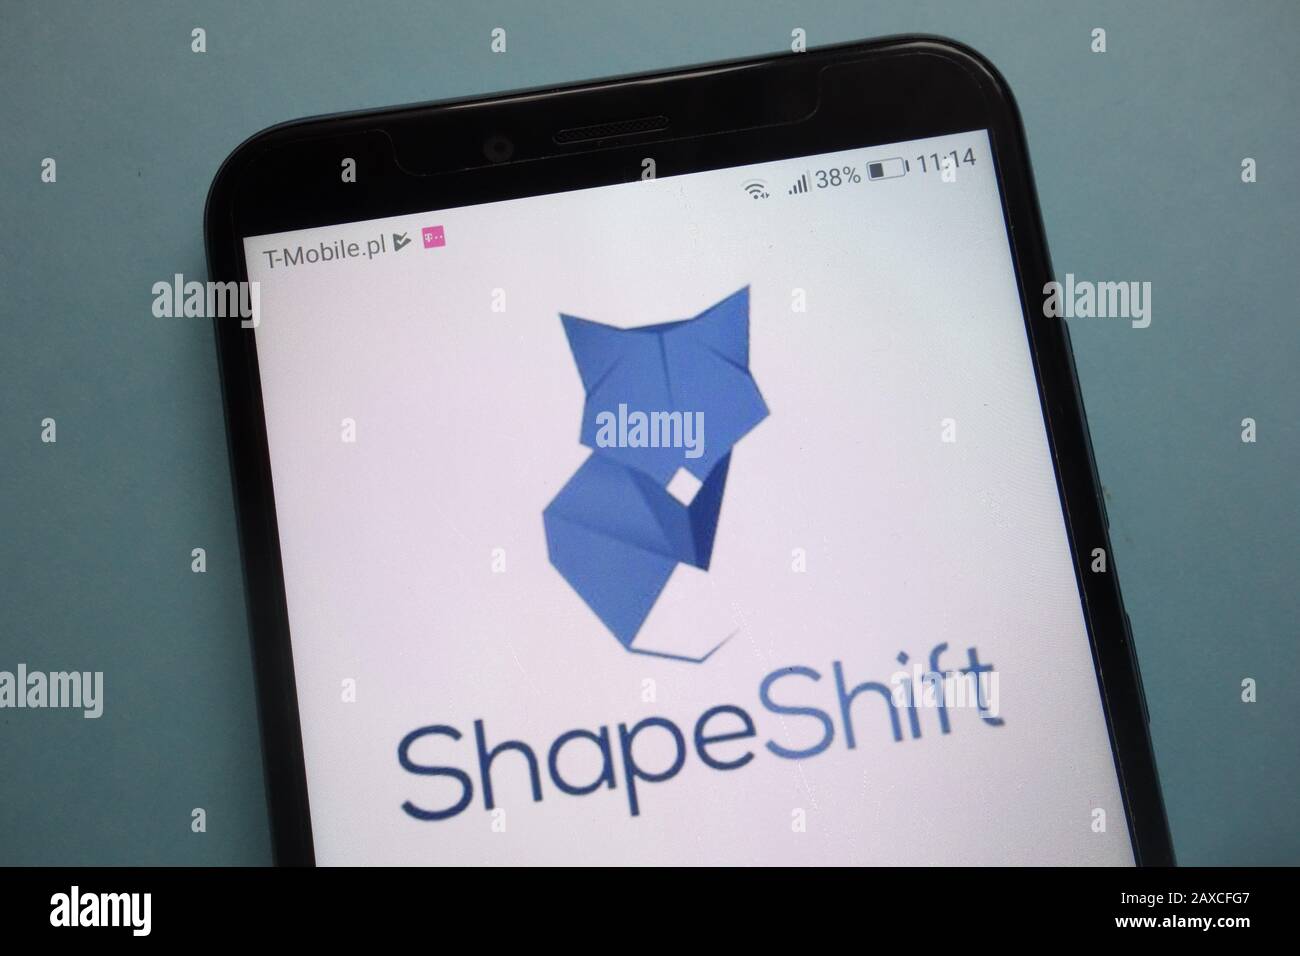 ShapeShift logo on smartphone Stock Photo